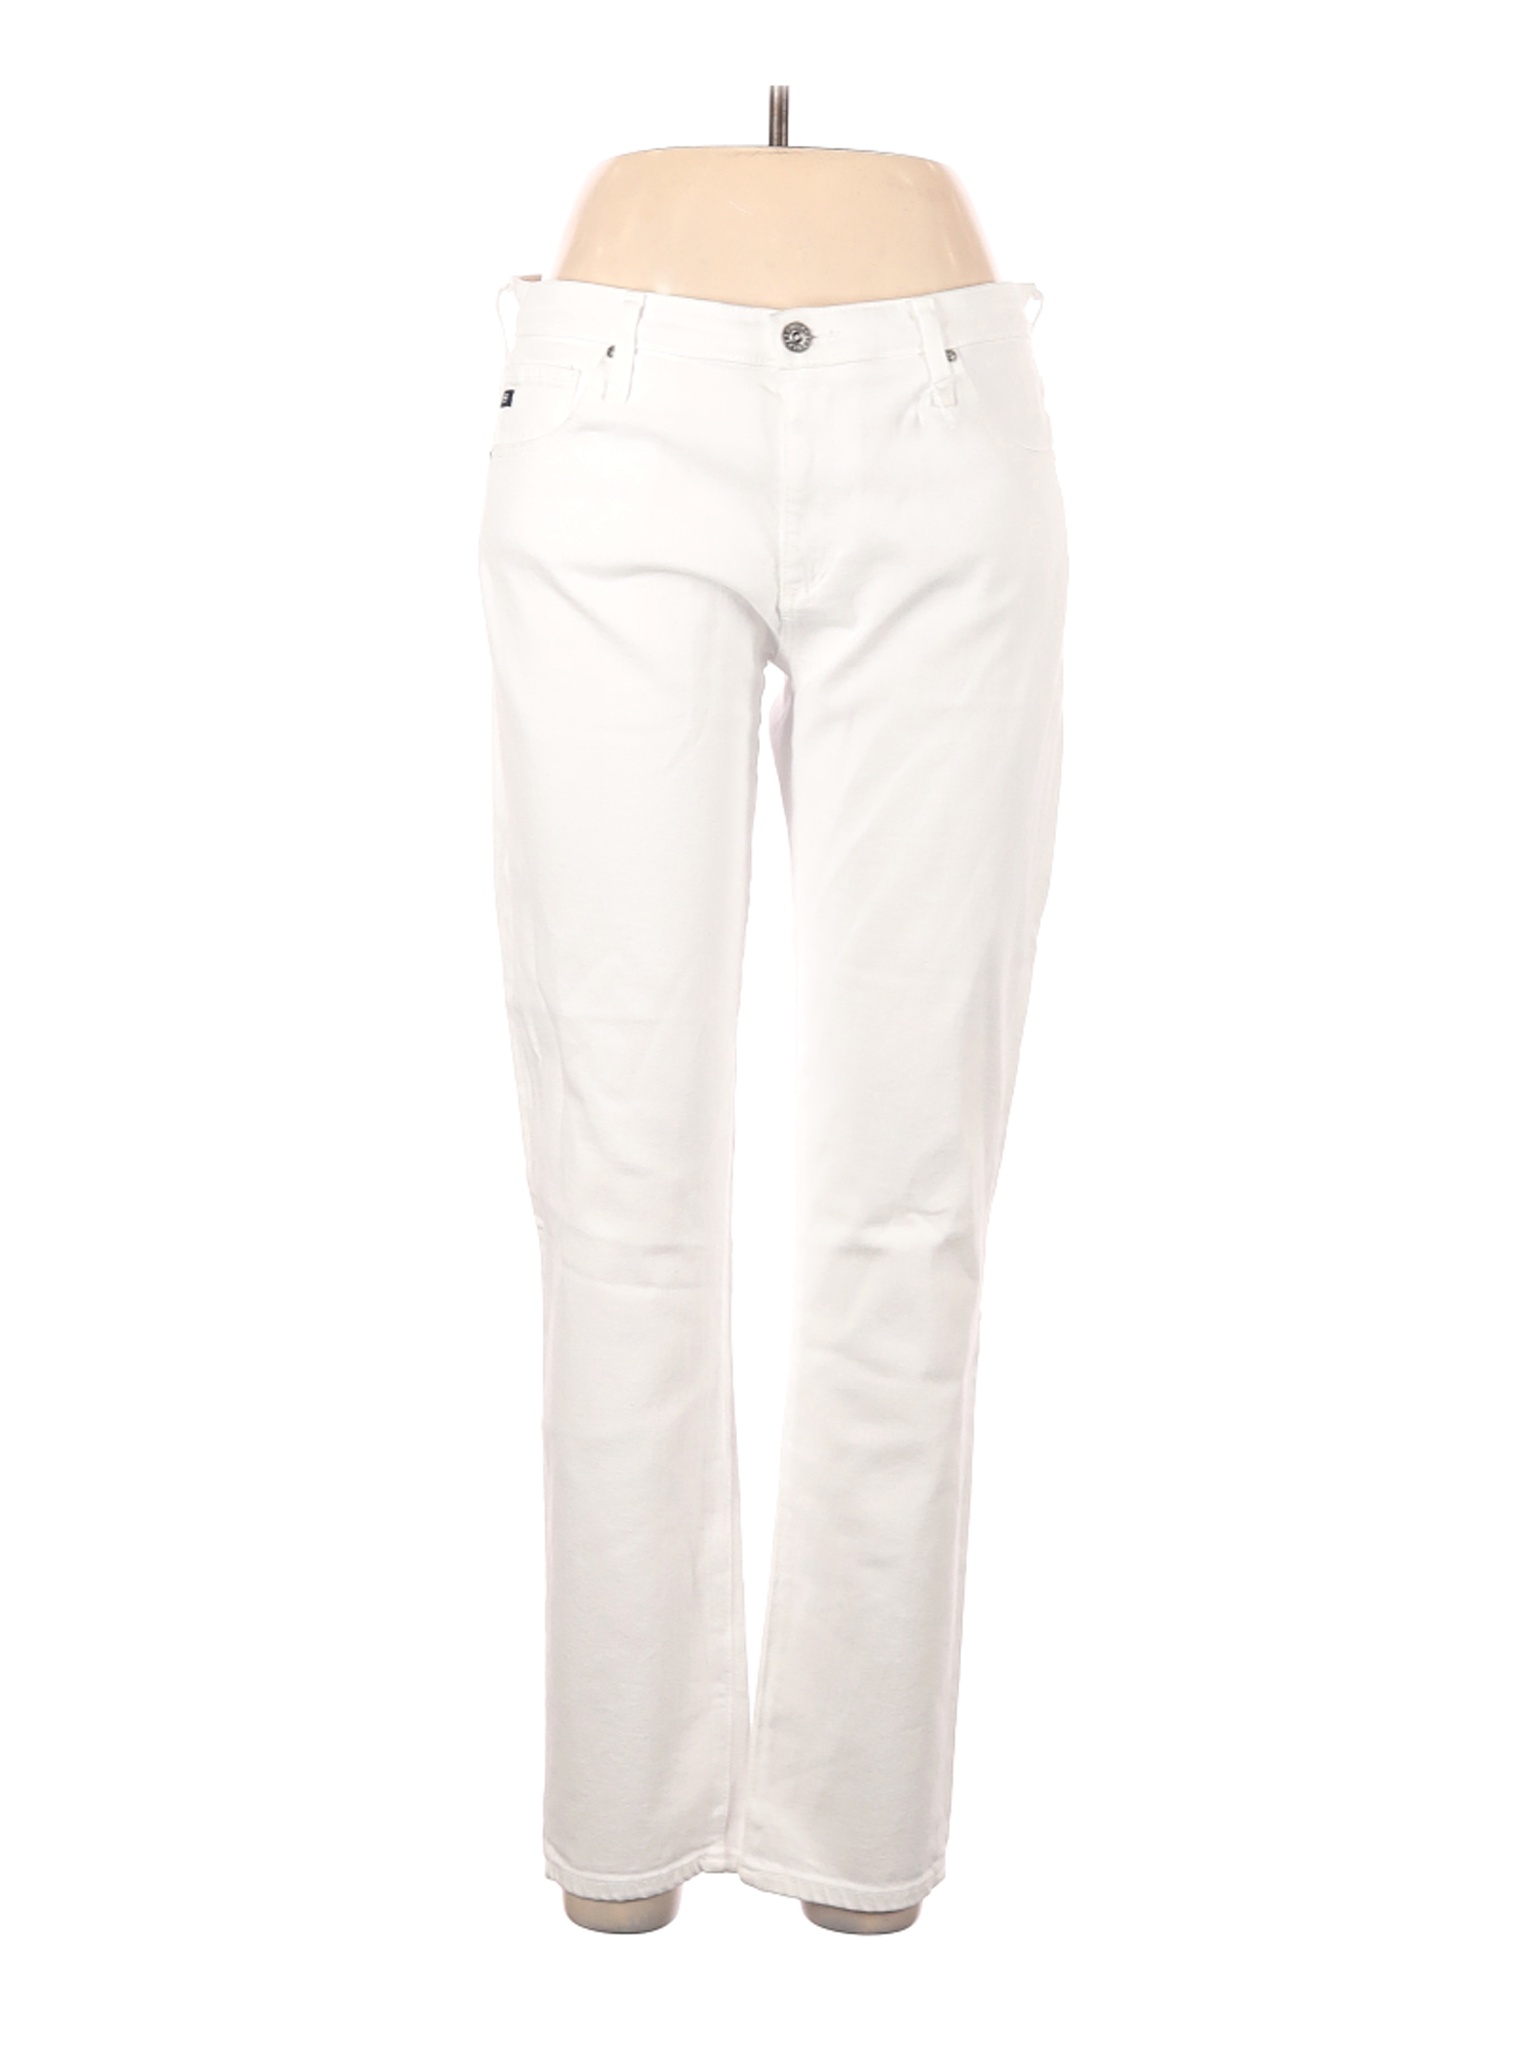 NWT Adriano Goldschmied Women White Jeans 31W | eBay